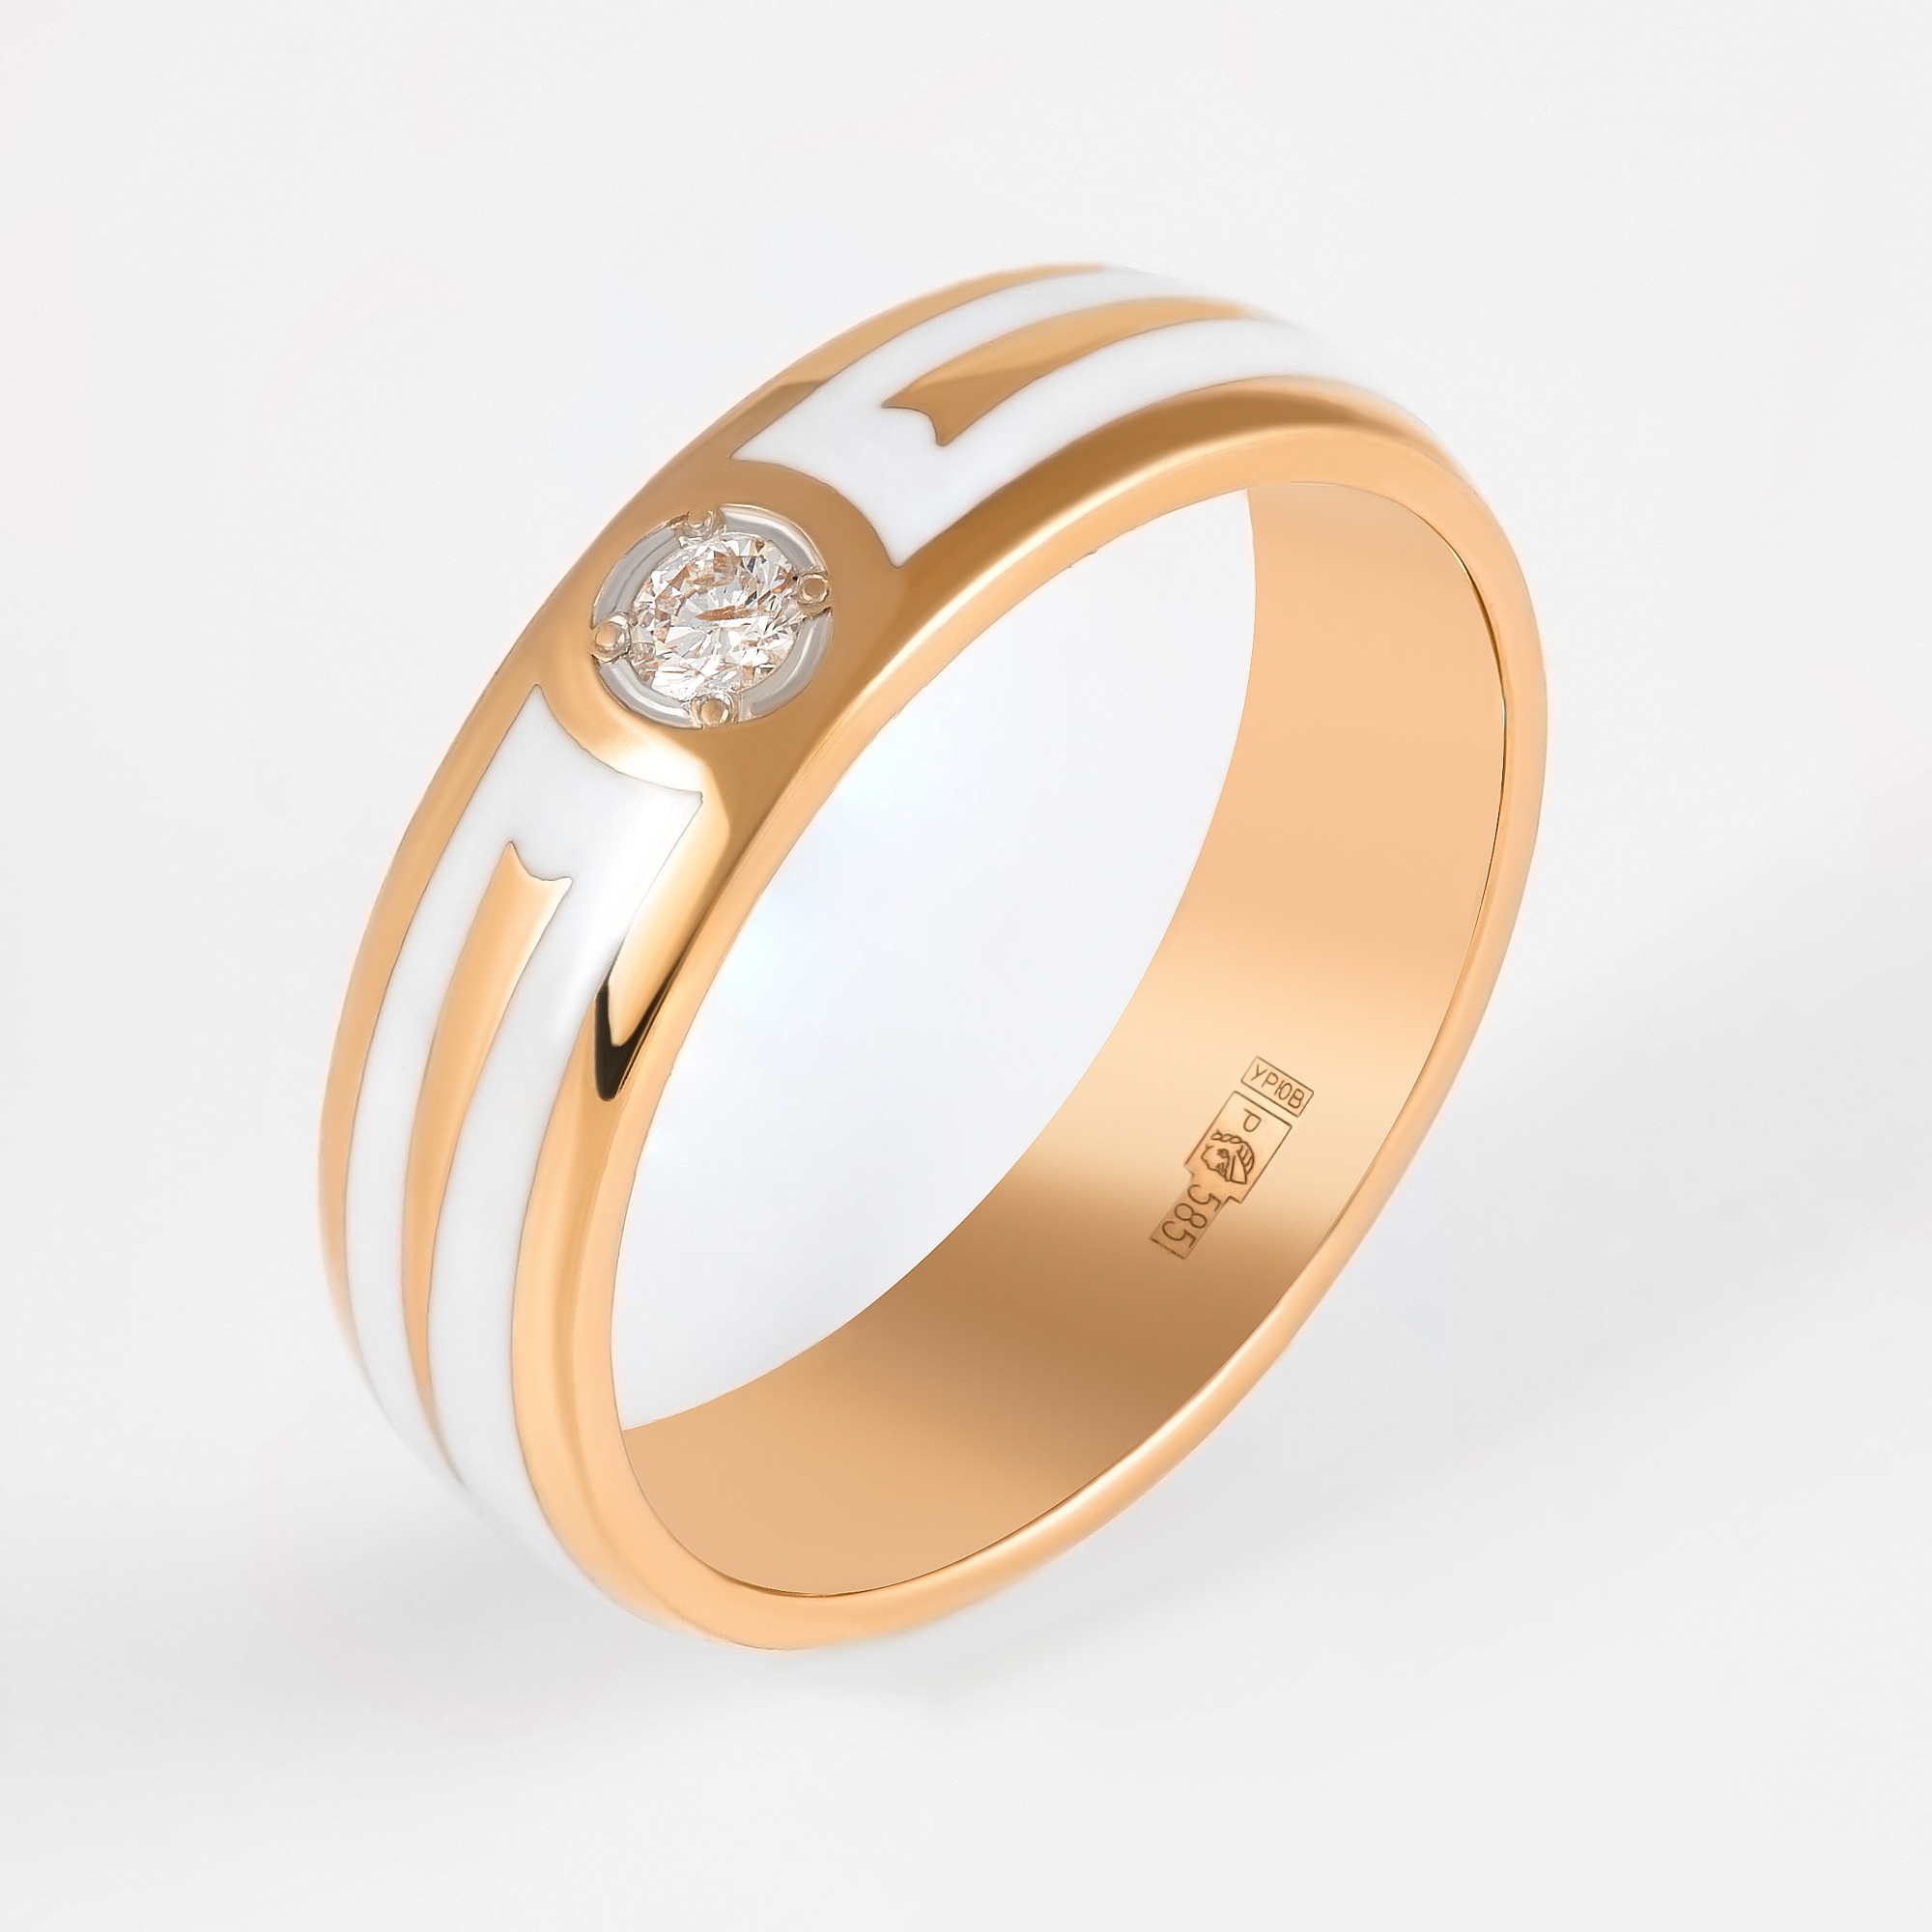 К чему снится кольцо: значение снов о золотых или серебряных кольцах с камнями согласно соннику